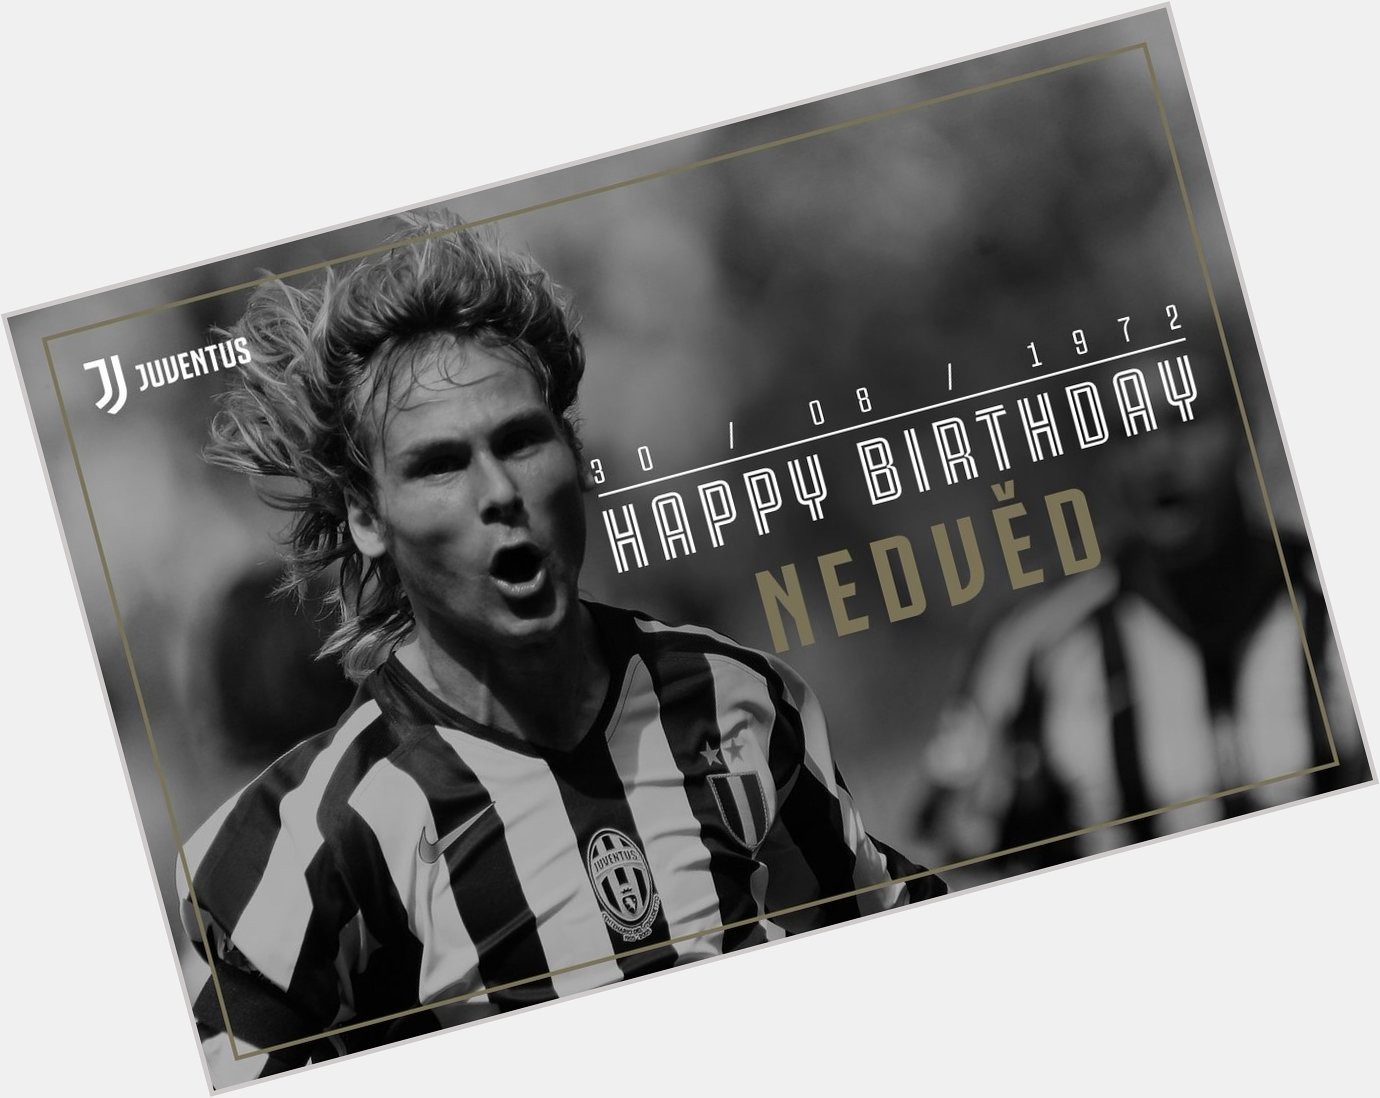 Event:Happy Birthday, Pavel!  